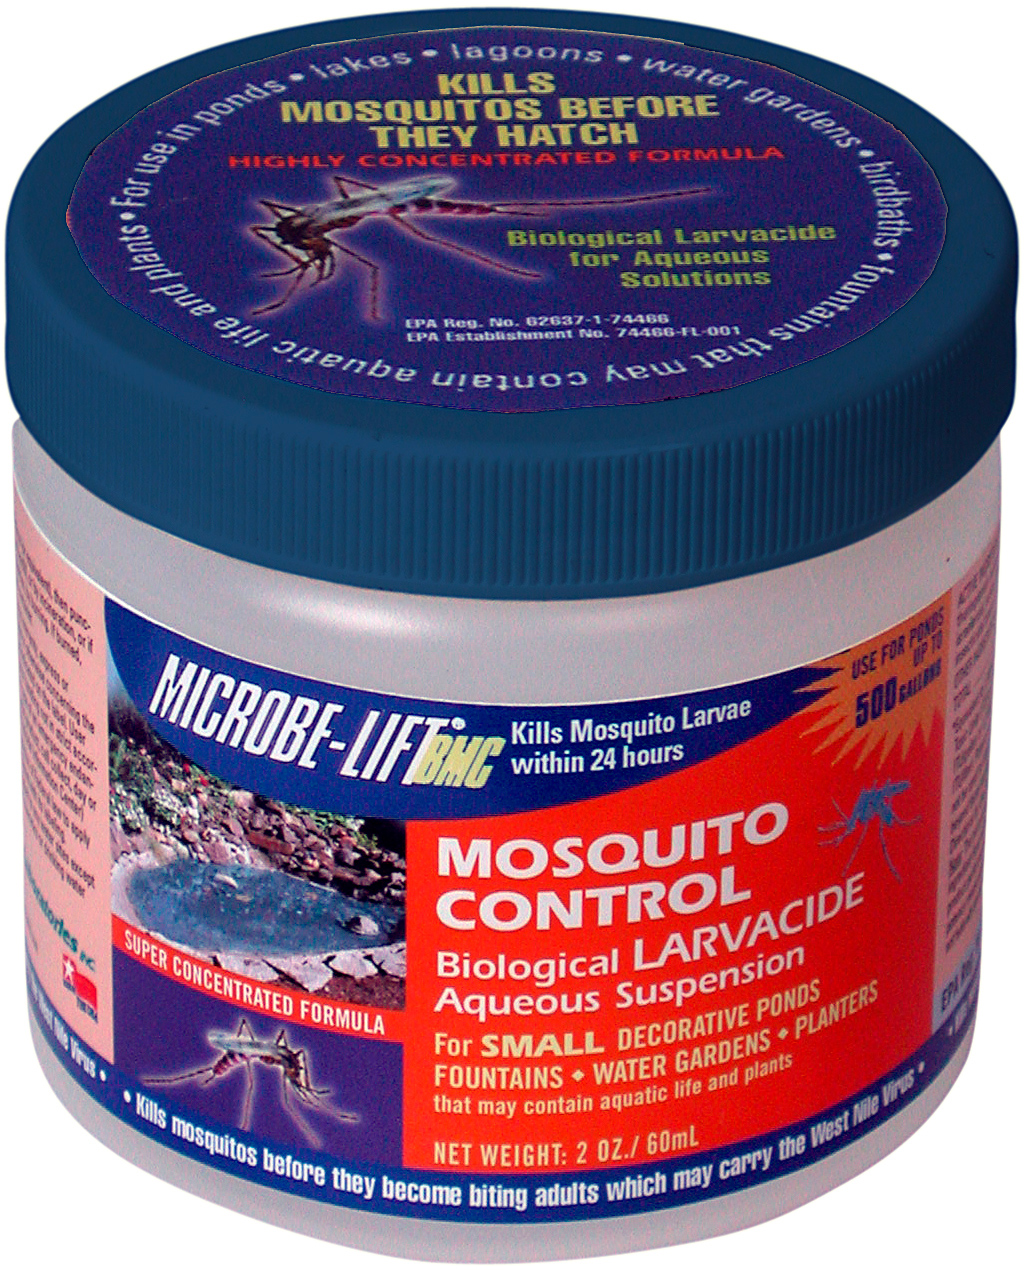 Picture for Microbe-Lift BMC Liquid Mosquito Control, 2 oz